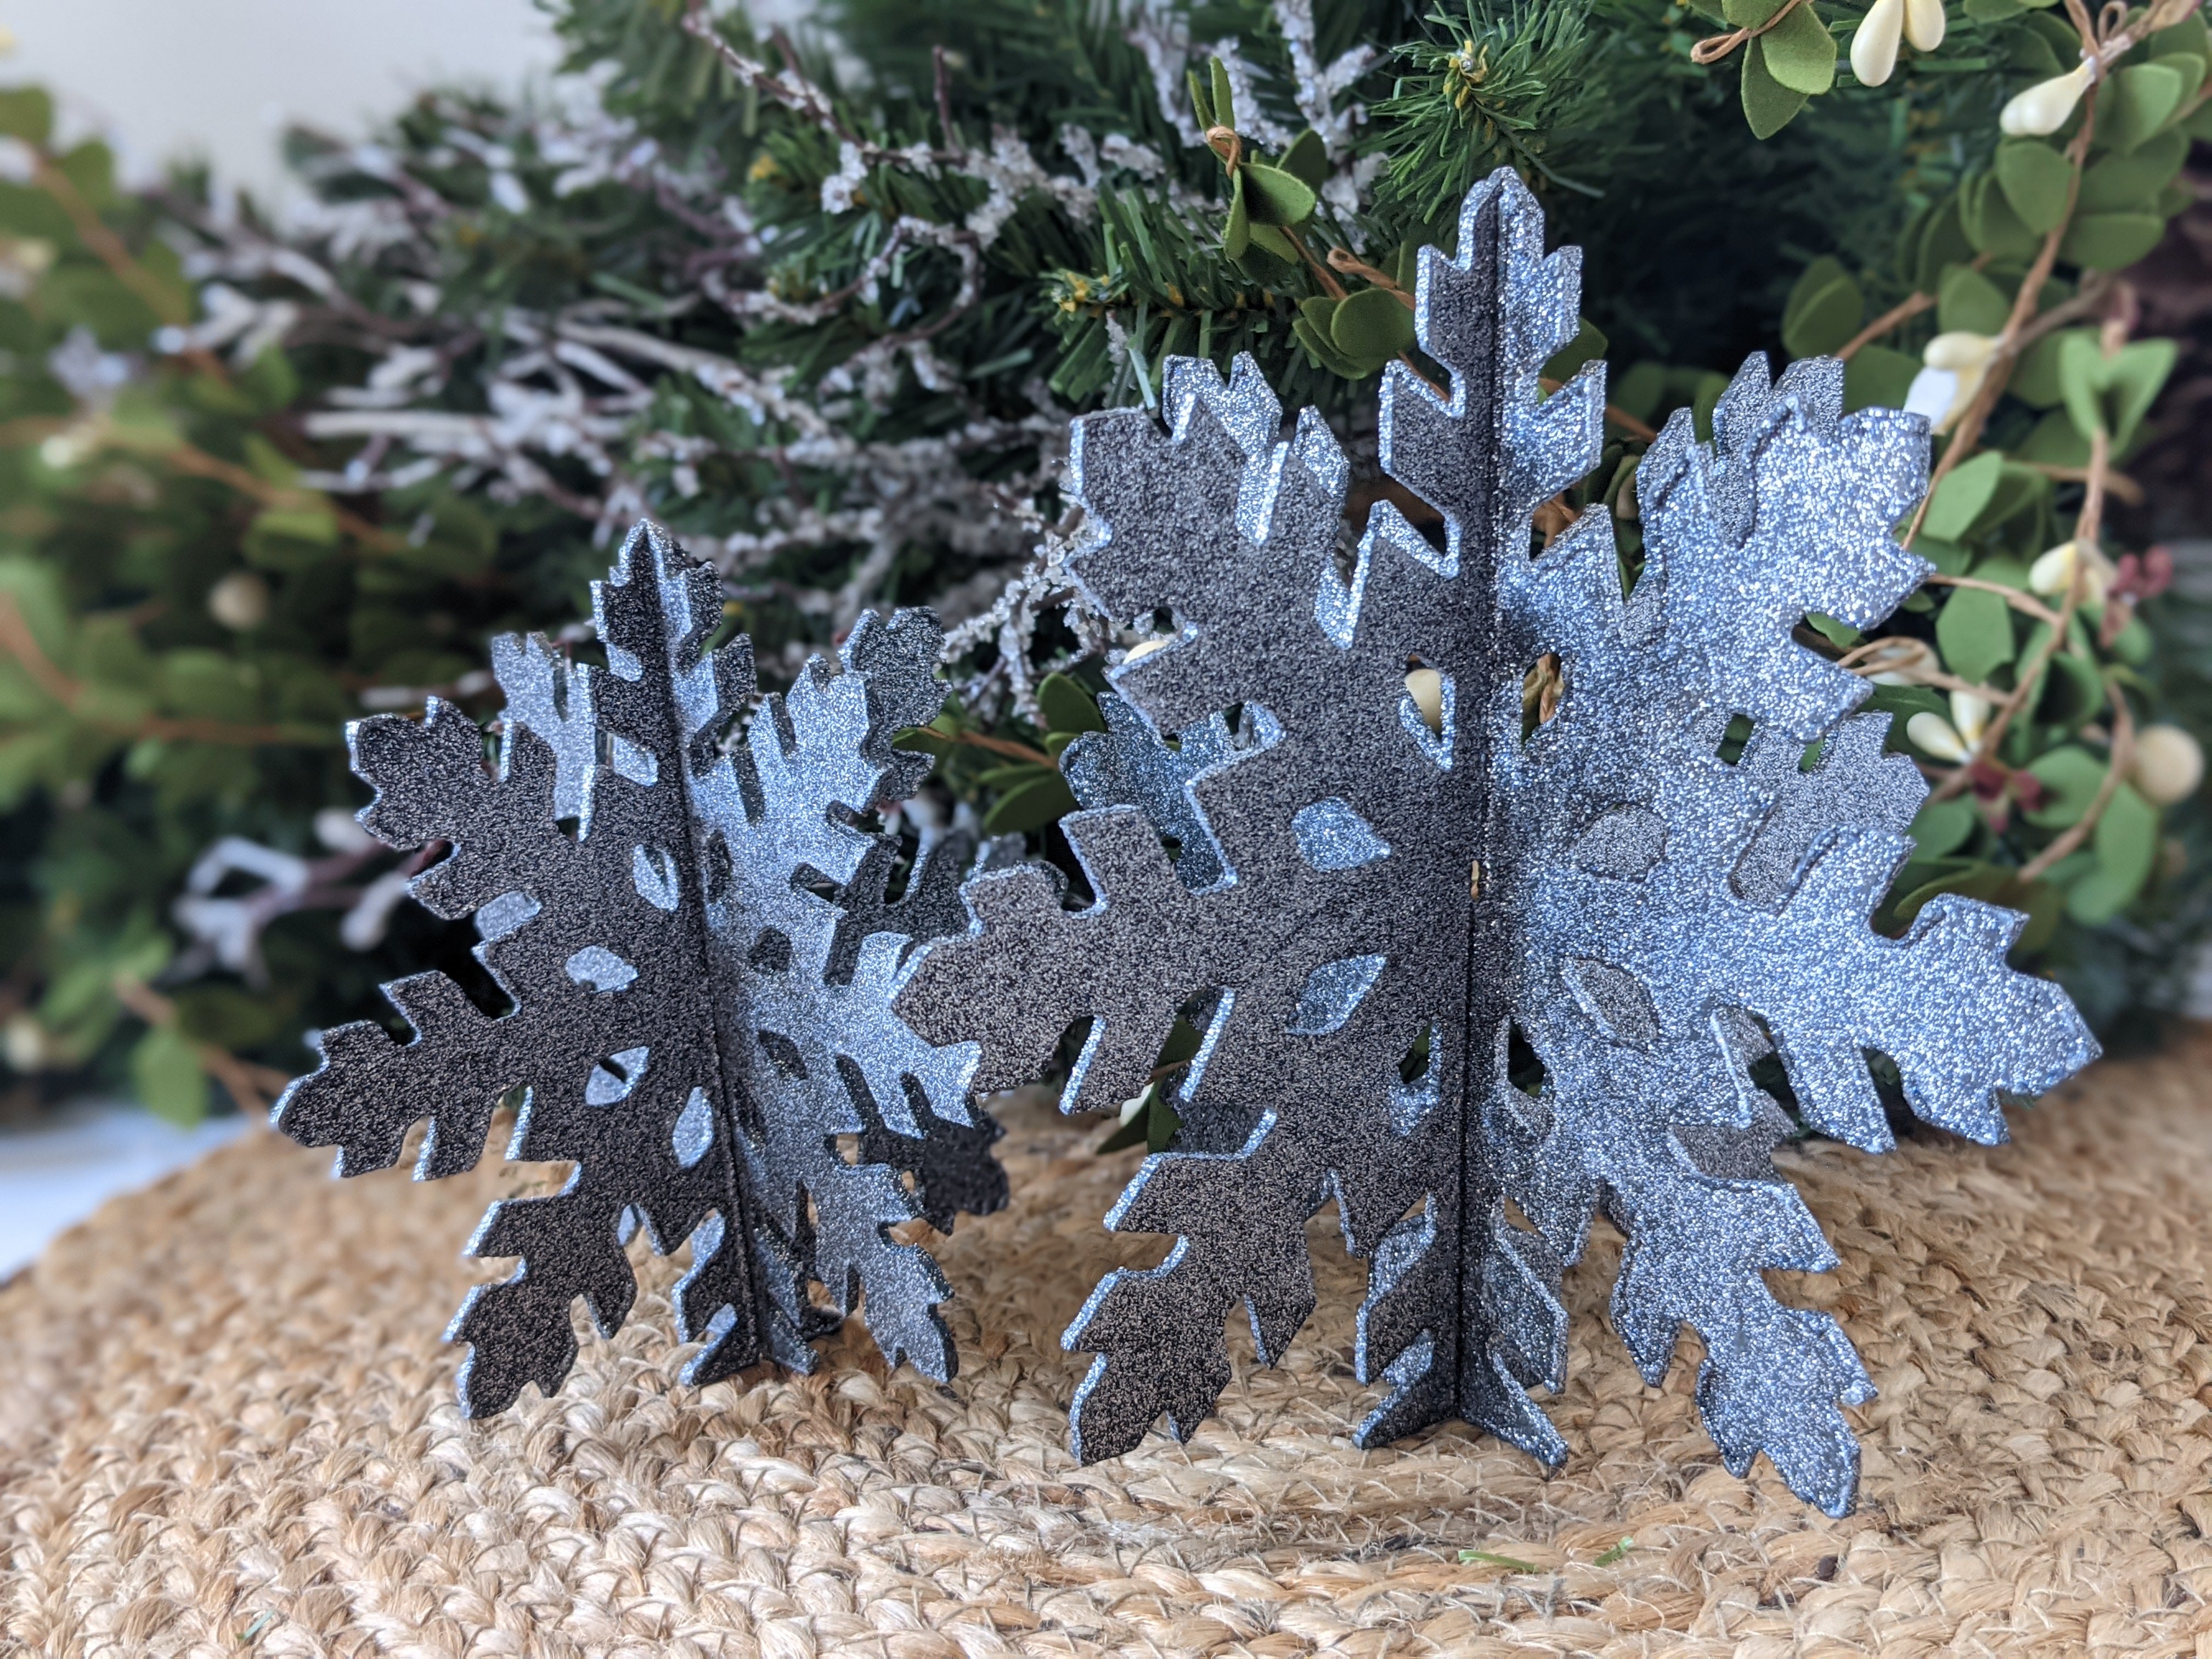 Frosty Snowflake - Gray w/Metallic Silver Snowflakes